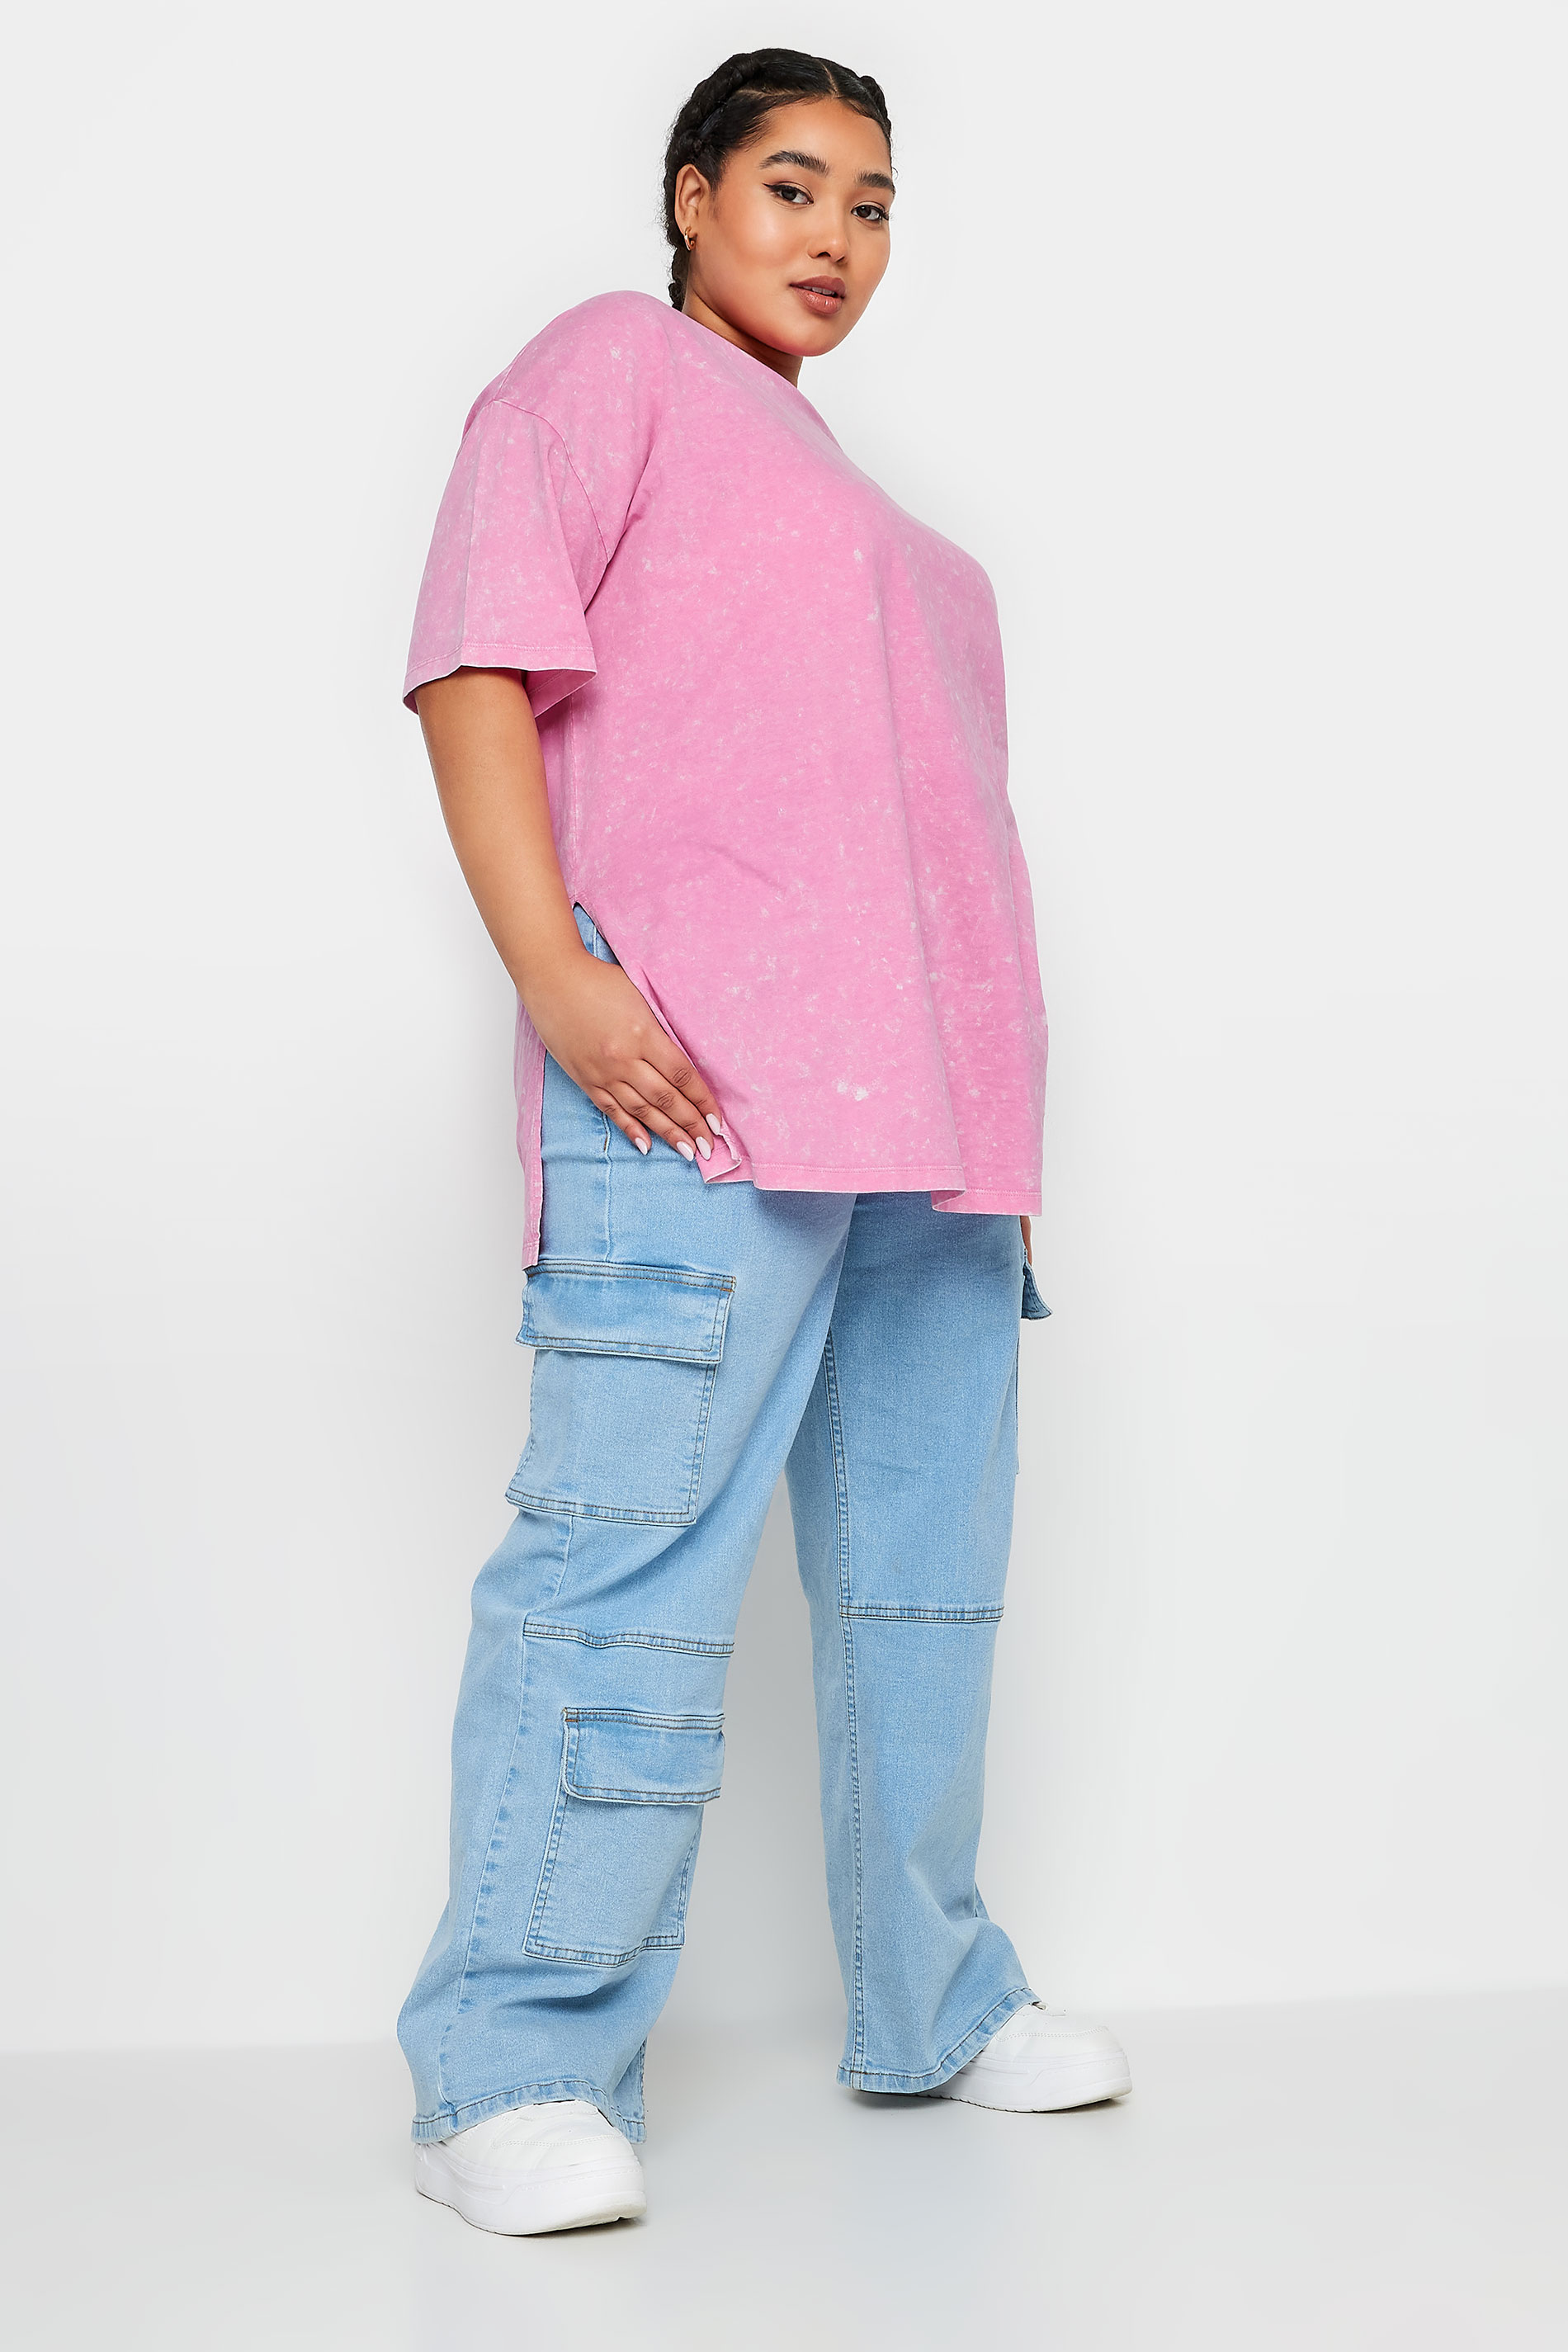 YOURS Plus Size Pink Acid Wash Split Hem Oversized T-Shirt | Yours Clothing 2